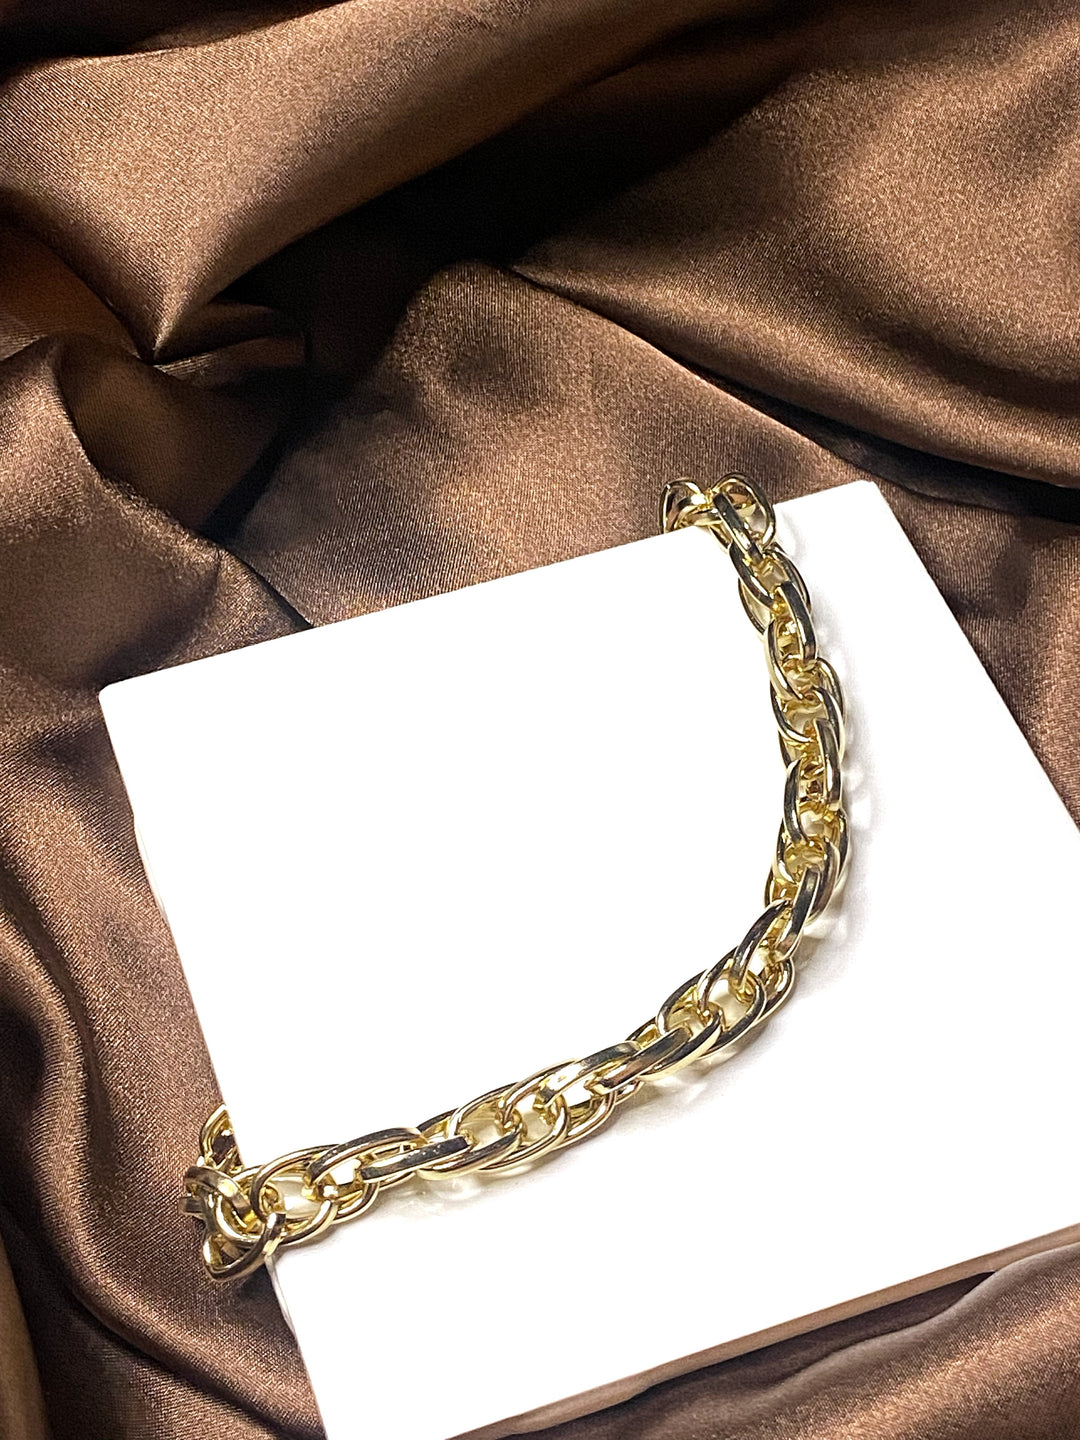 Blaire Chain Necklace